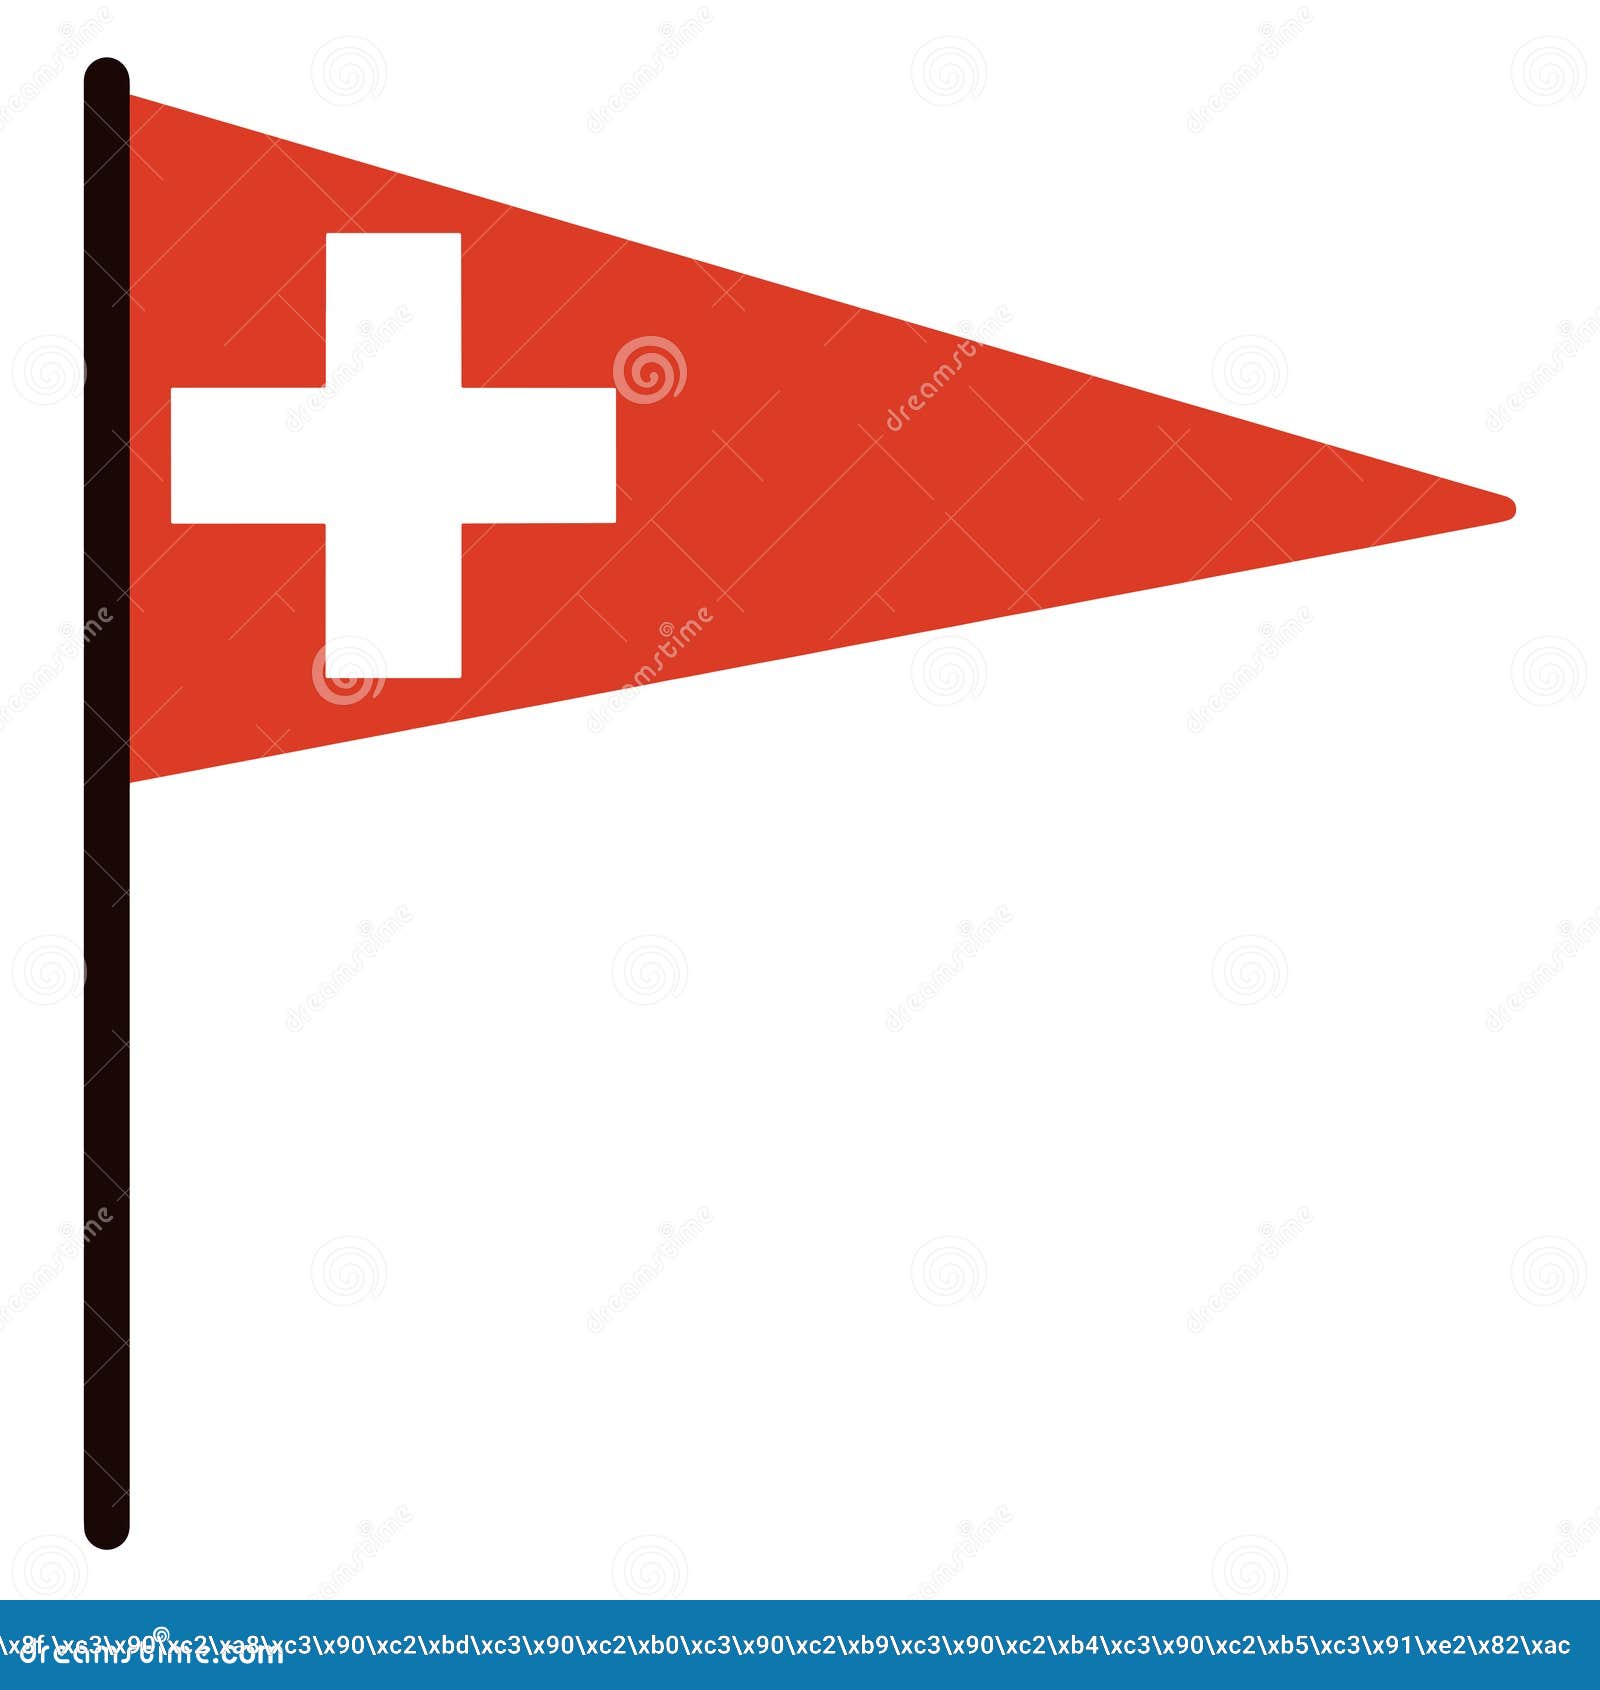 Biểu tượng lá cờ Thụy Sĩ đã thu hút sự chú ý của nhiều người từ lâu, và bạn cũng không ngoại lệ. Hãy chiêm ngưỡng những biểu tượng độc đáo và thú vị liên quan đến quốc kỳ đặc trưng của nước Thụy Sĩ bằng cách xem các hình ảnh này. Translation: The icon of the Swiss flag has attracted the attention of many people for a long time, and you are no exception. Let\'s admire the unique and interesting icons related to the characteristic flag of Switzerland by watching these images.